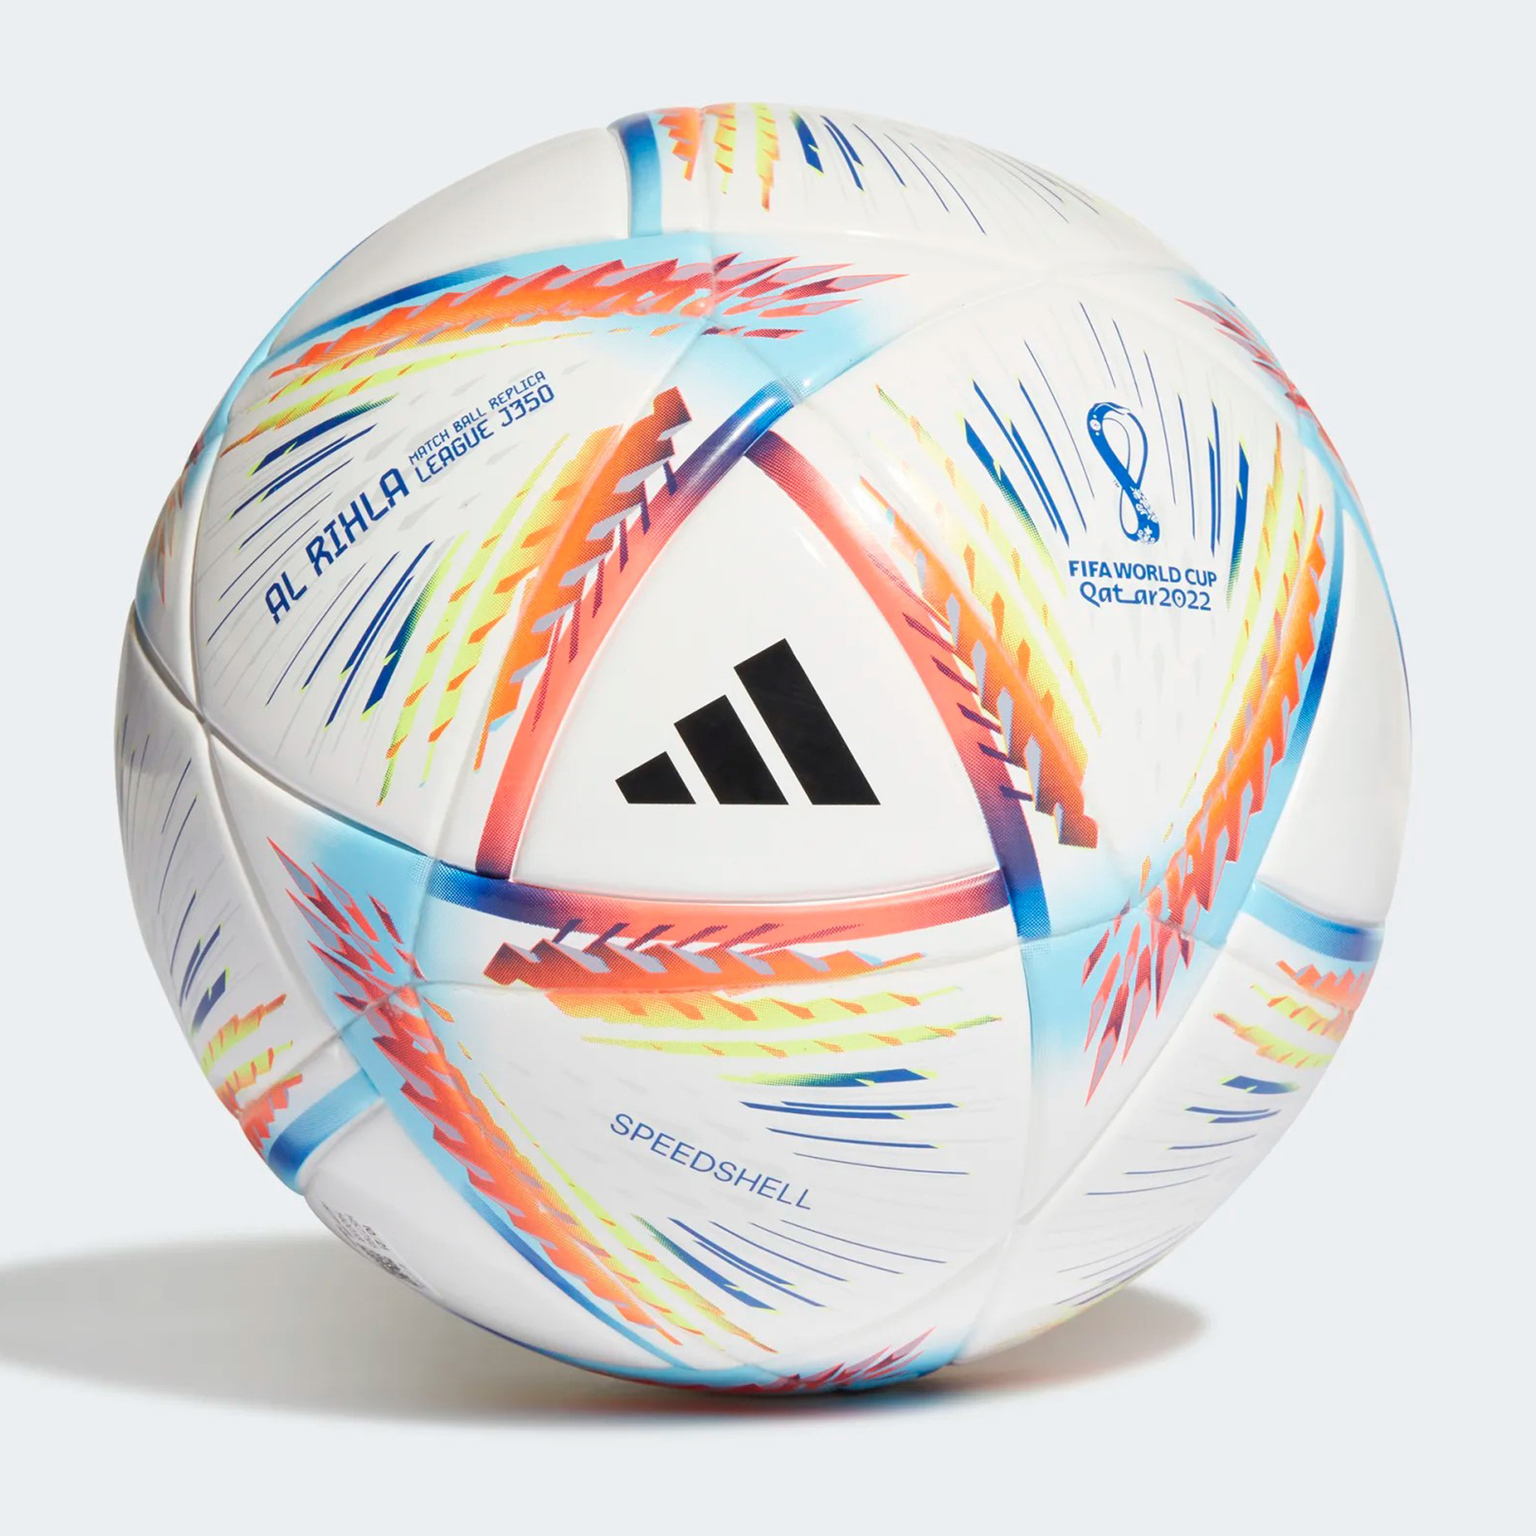 Футбольный мяч Adidas Rihla J350 H57795